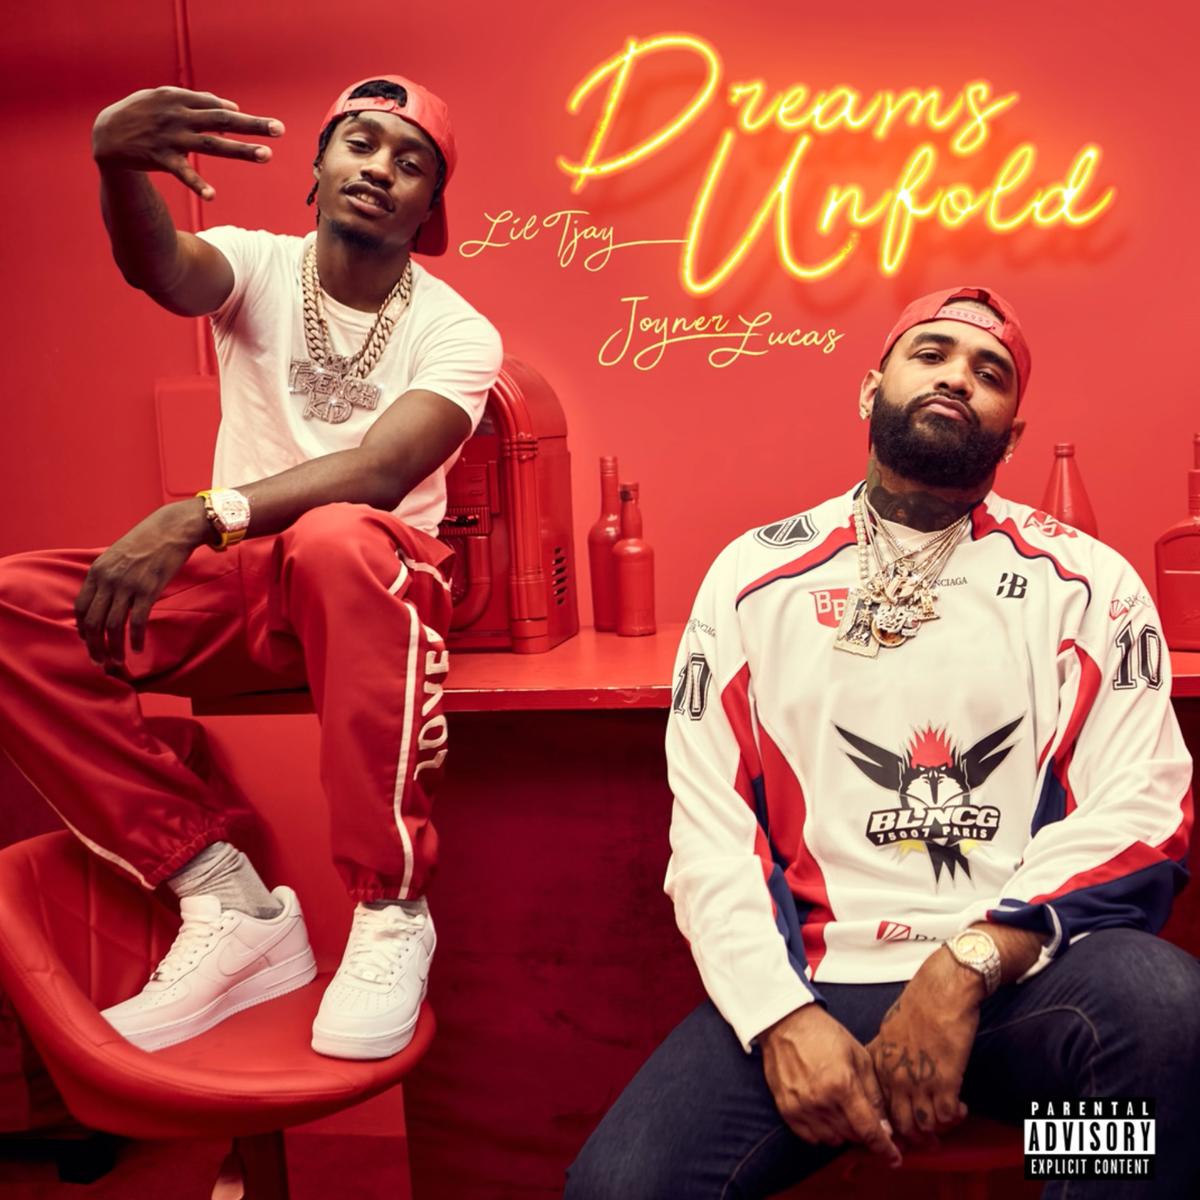 Joyner Lucas & Lil Tjay – “Dreams Unfold” [Audio]